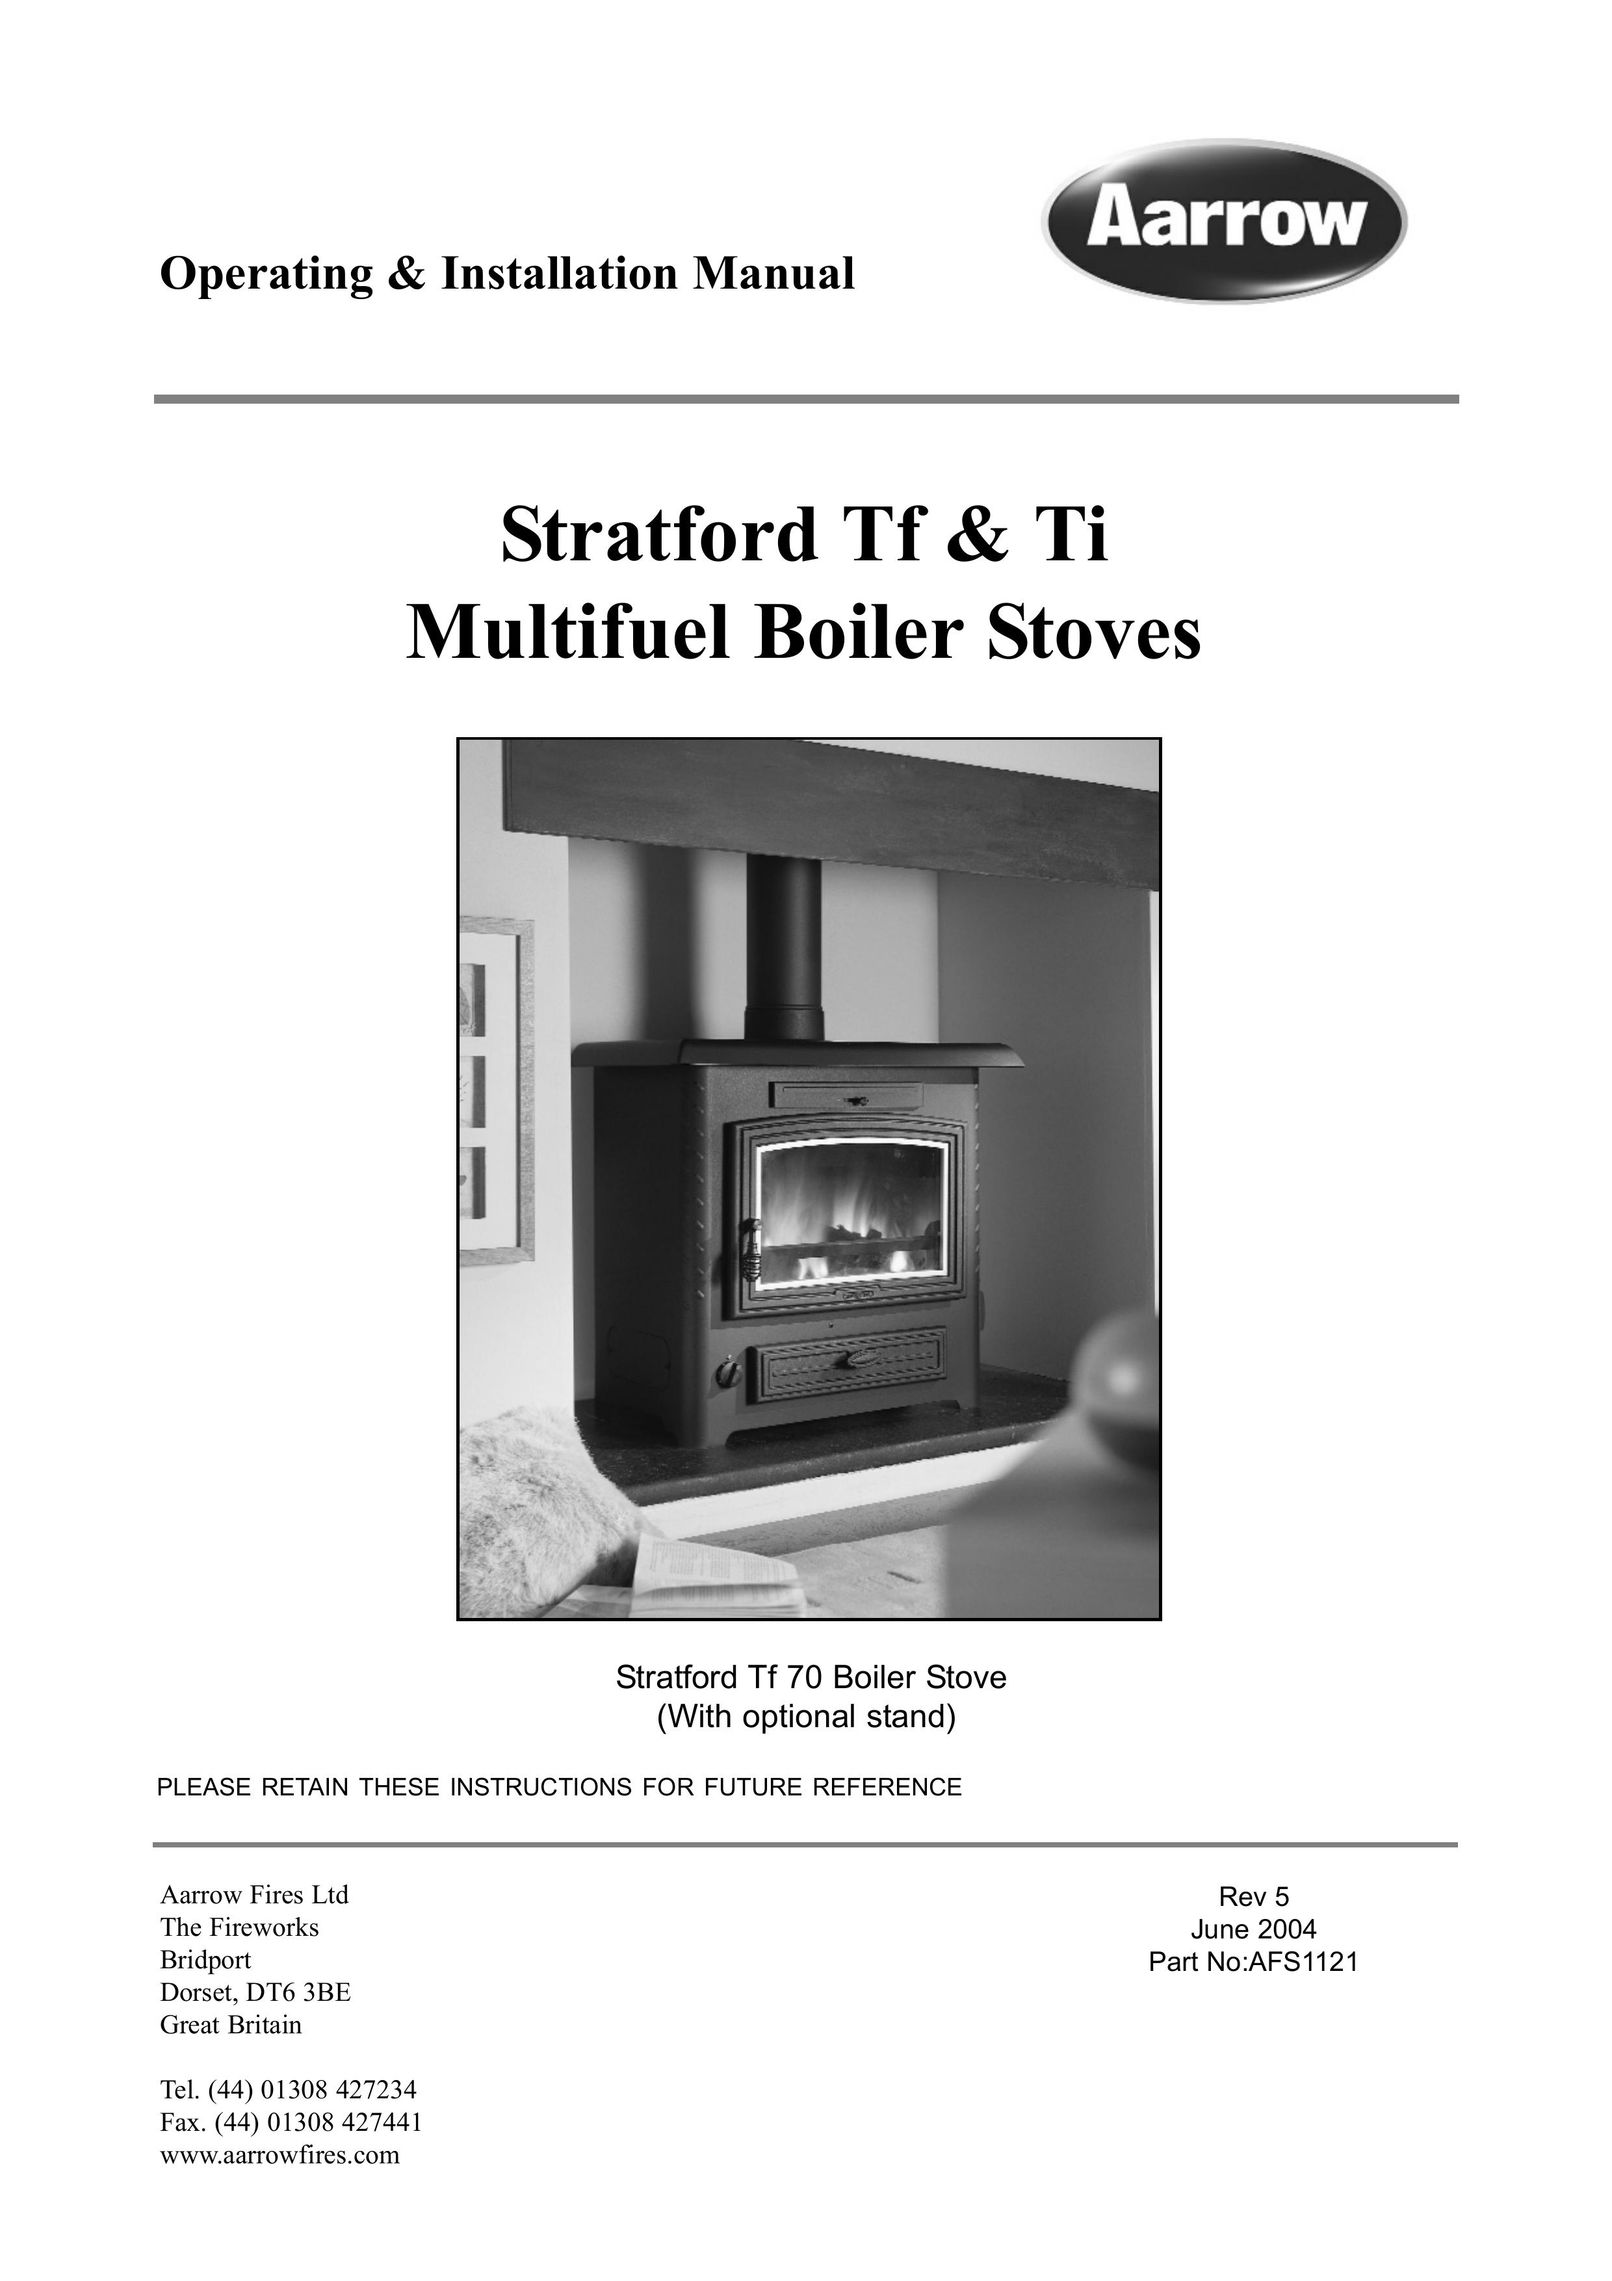 Aarrow Fires Stratford Ti Boiler User Manual